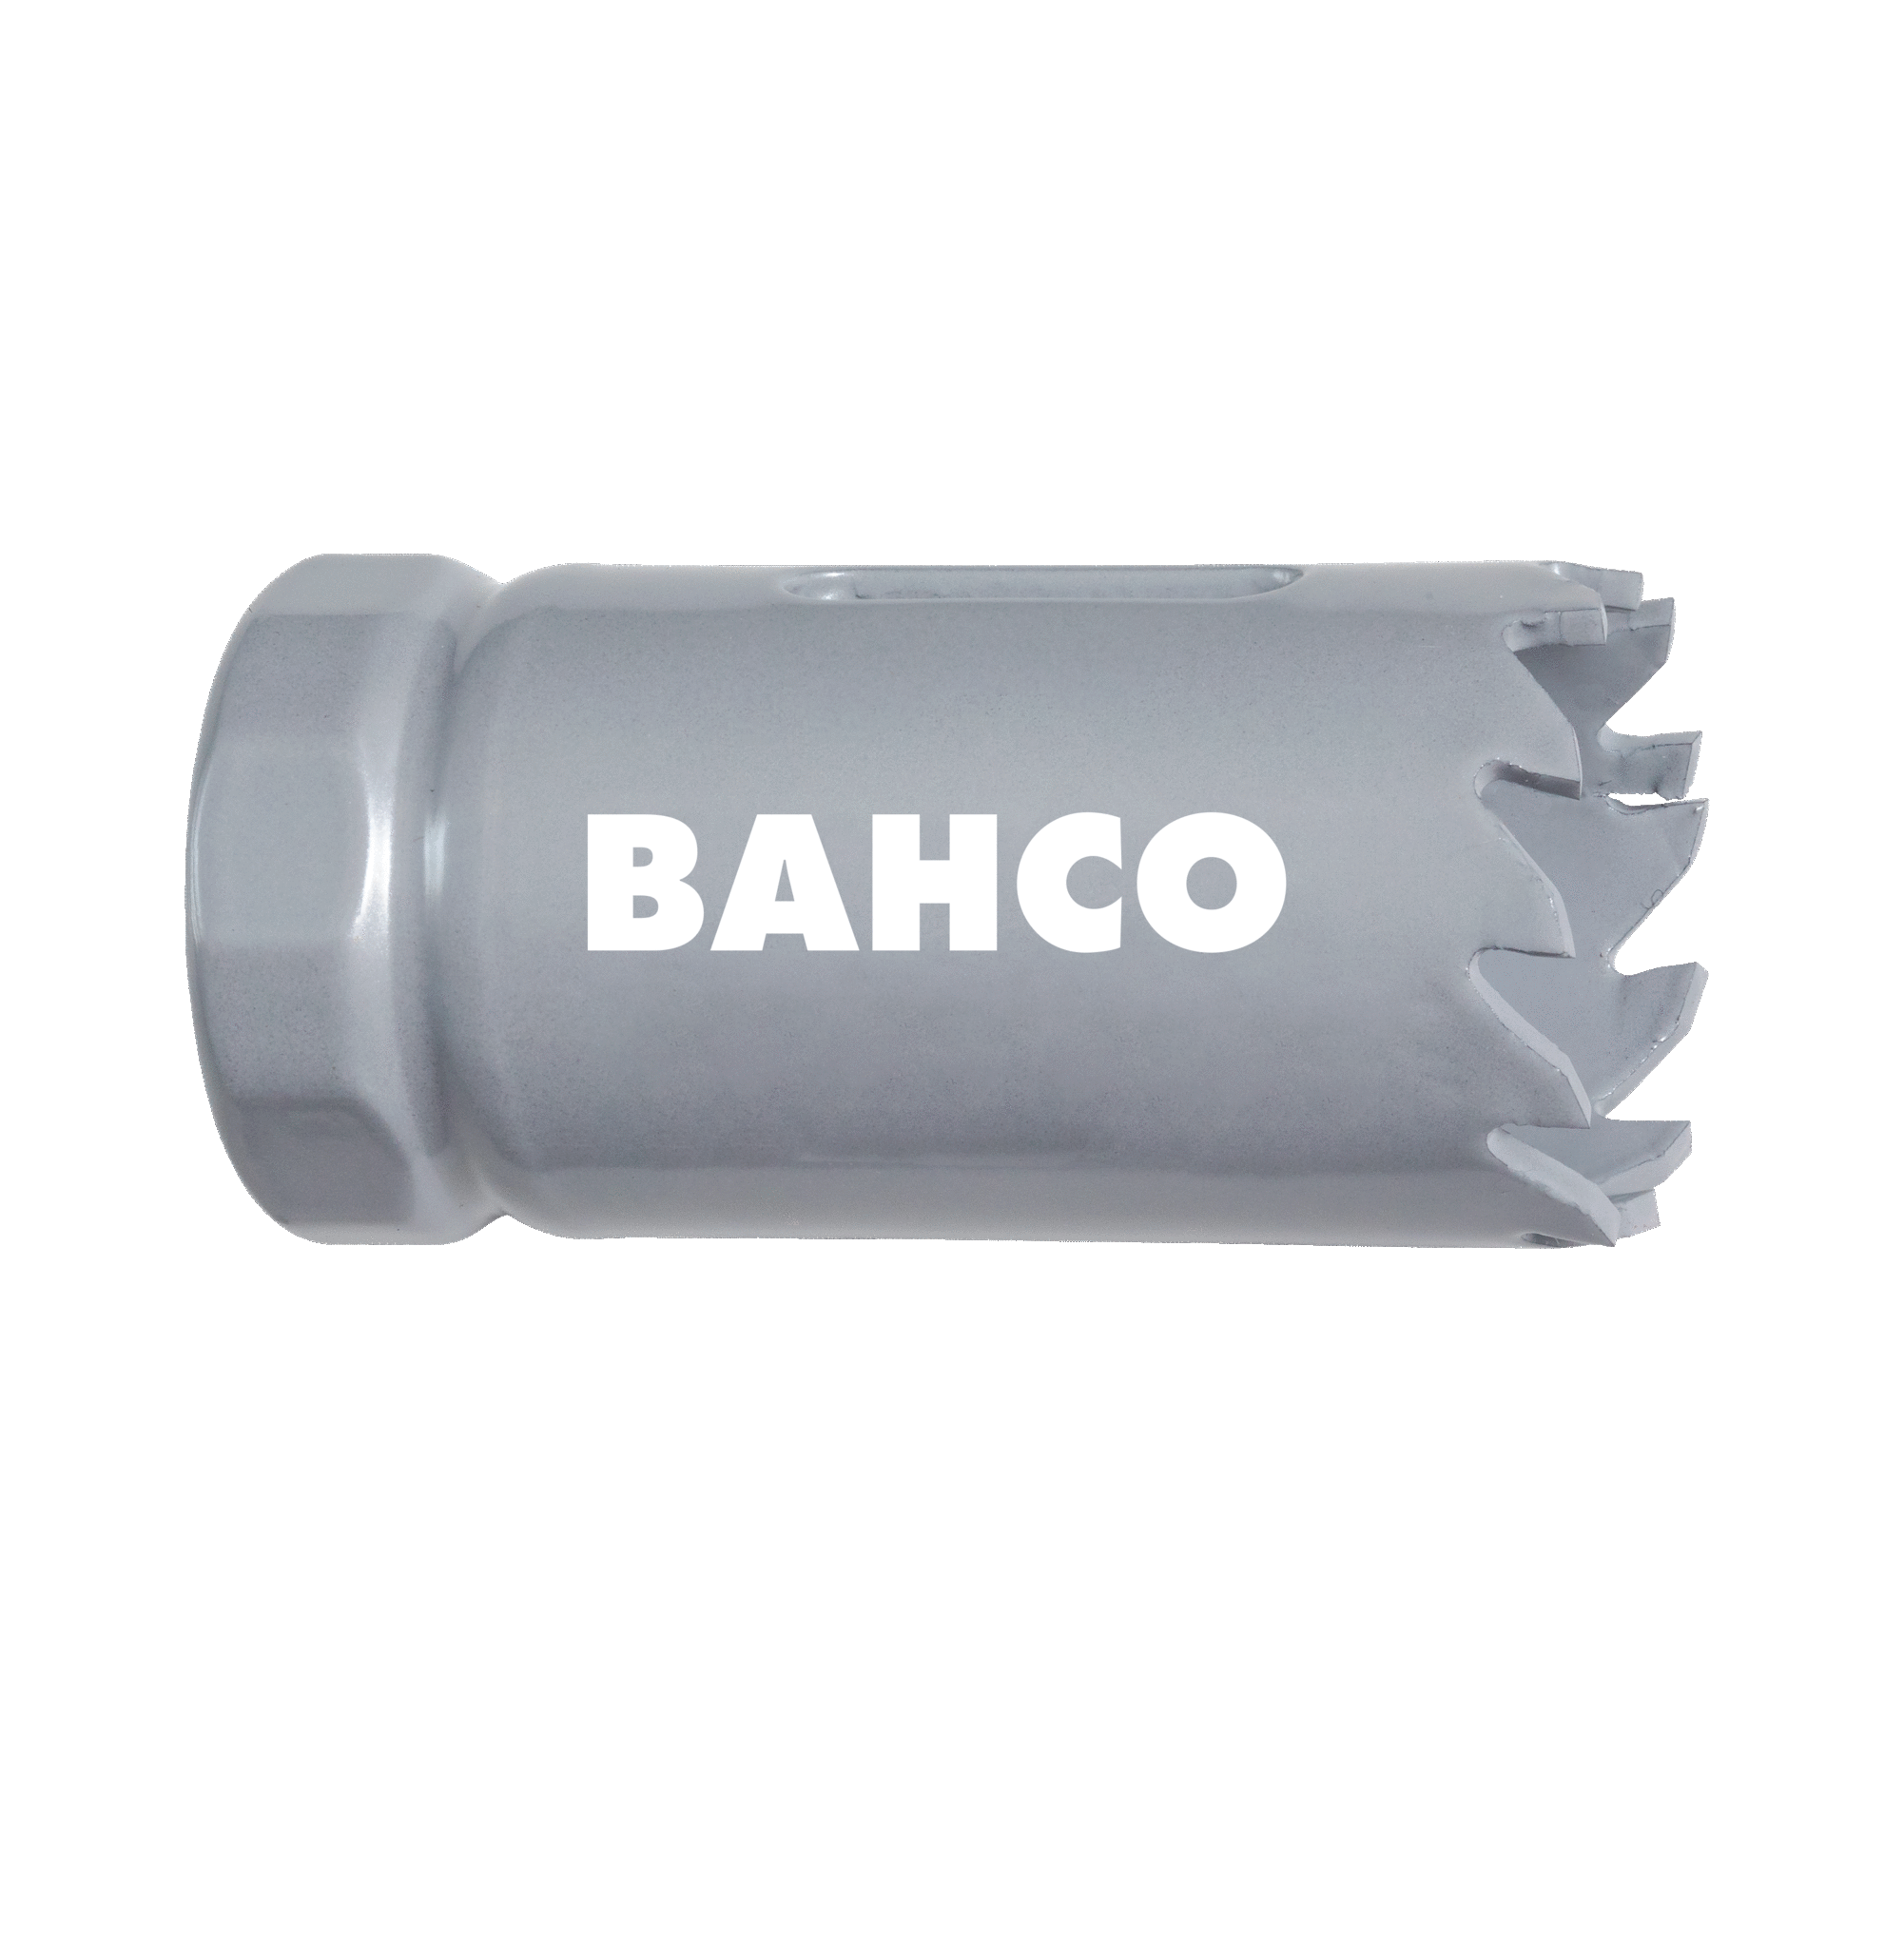 Кольцевые пилы с твердосплавными напайками BAHCO 3832-102